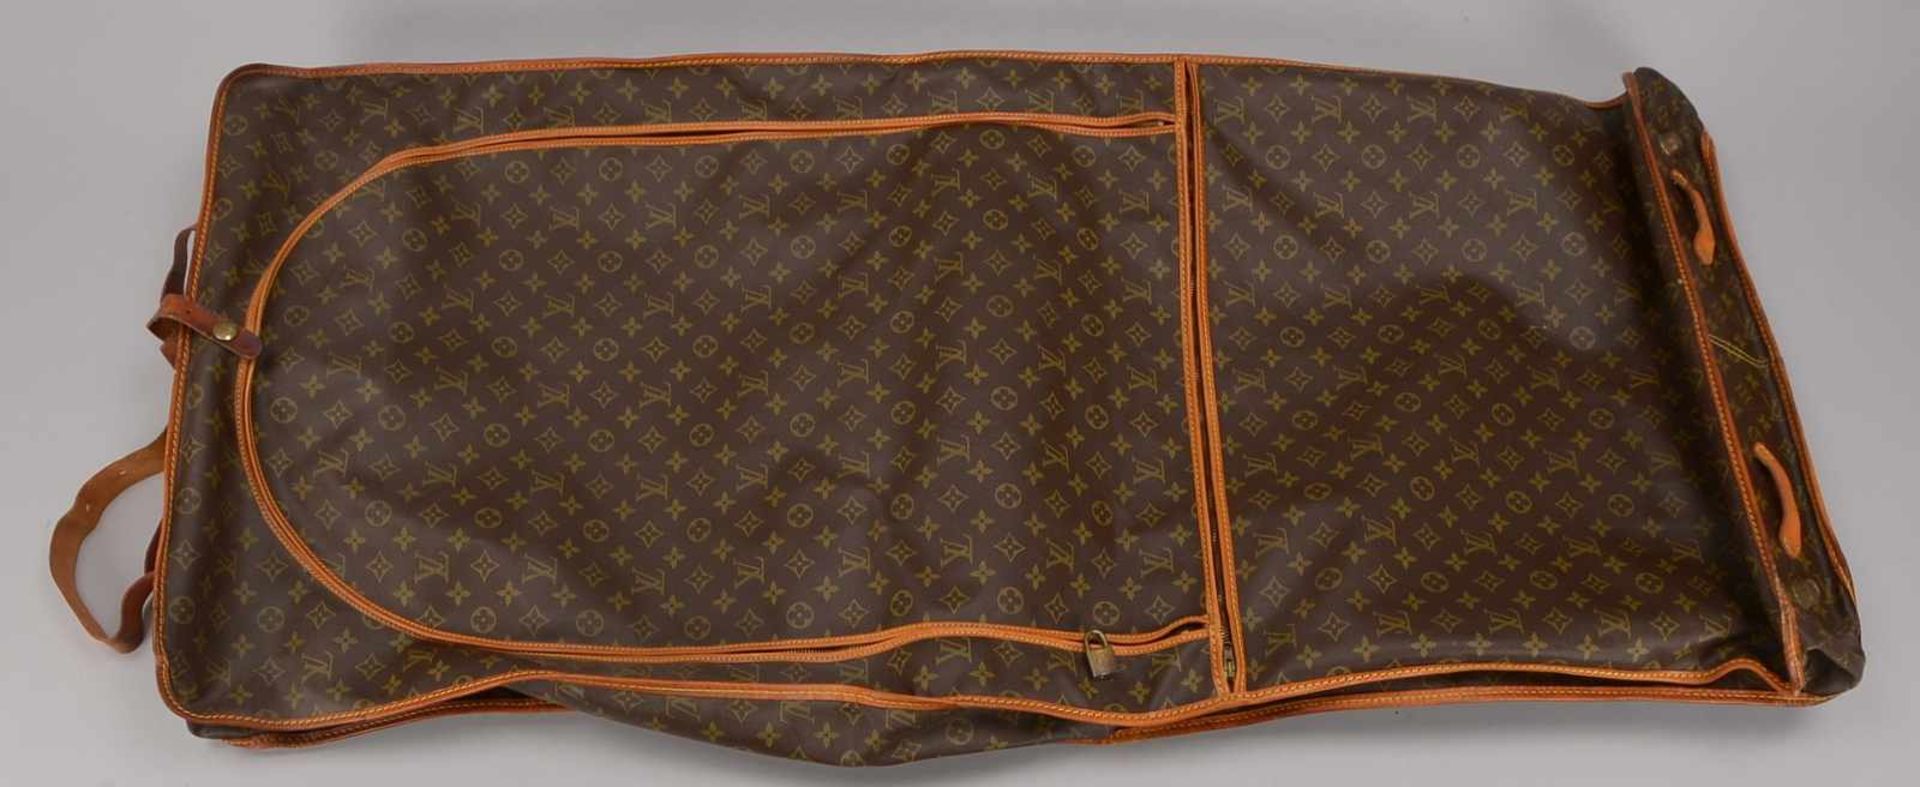 Reise-Kleidersack/Anzugsack, Louis Vuitton, innen mit Aufhängevorrichtung/mit 4x Kleiderbügeln, dazu - Bild 2 aus 2